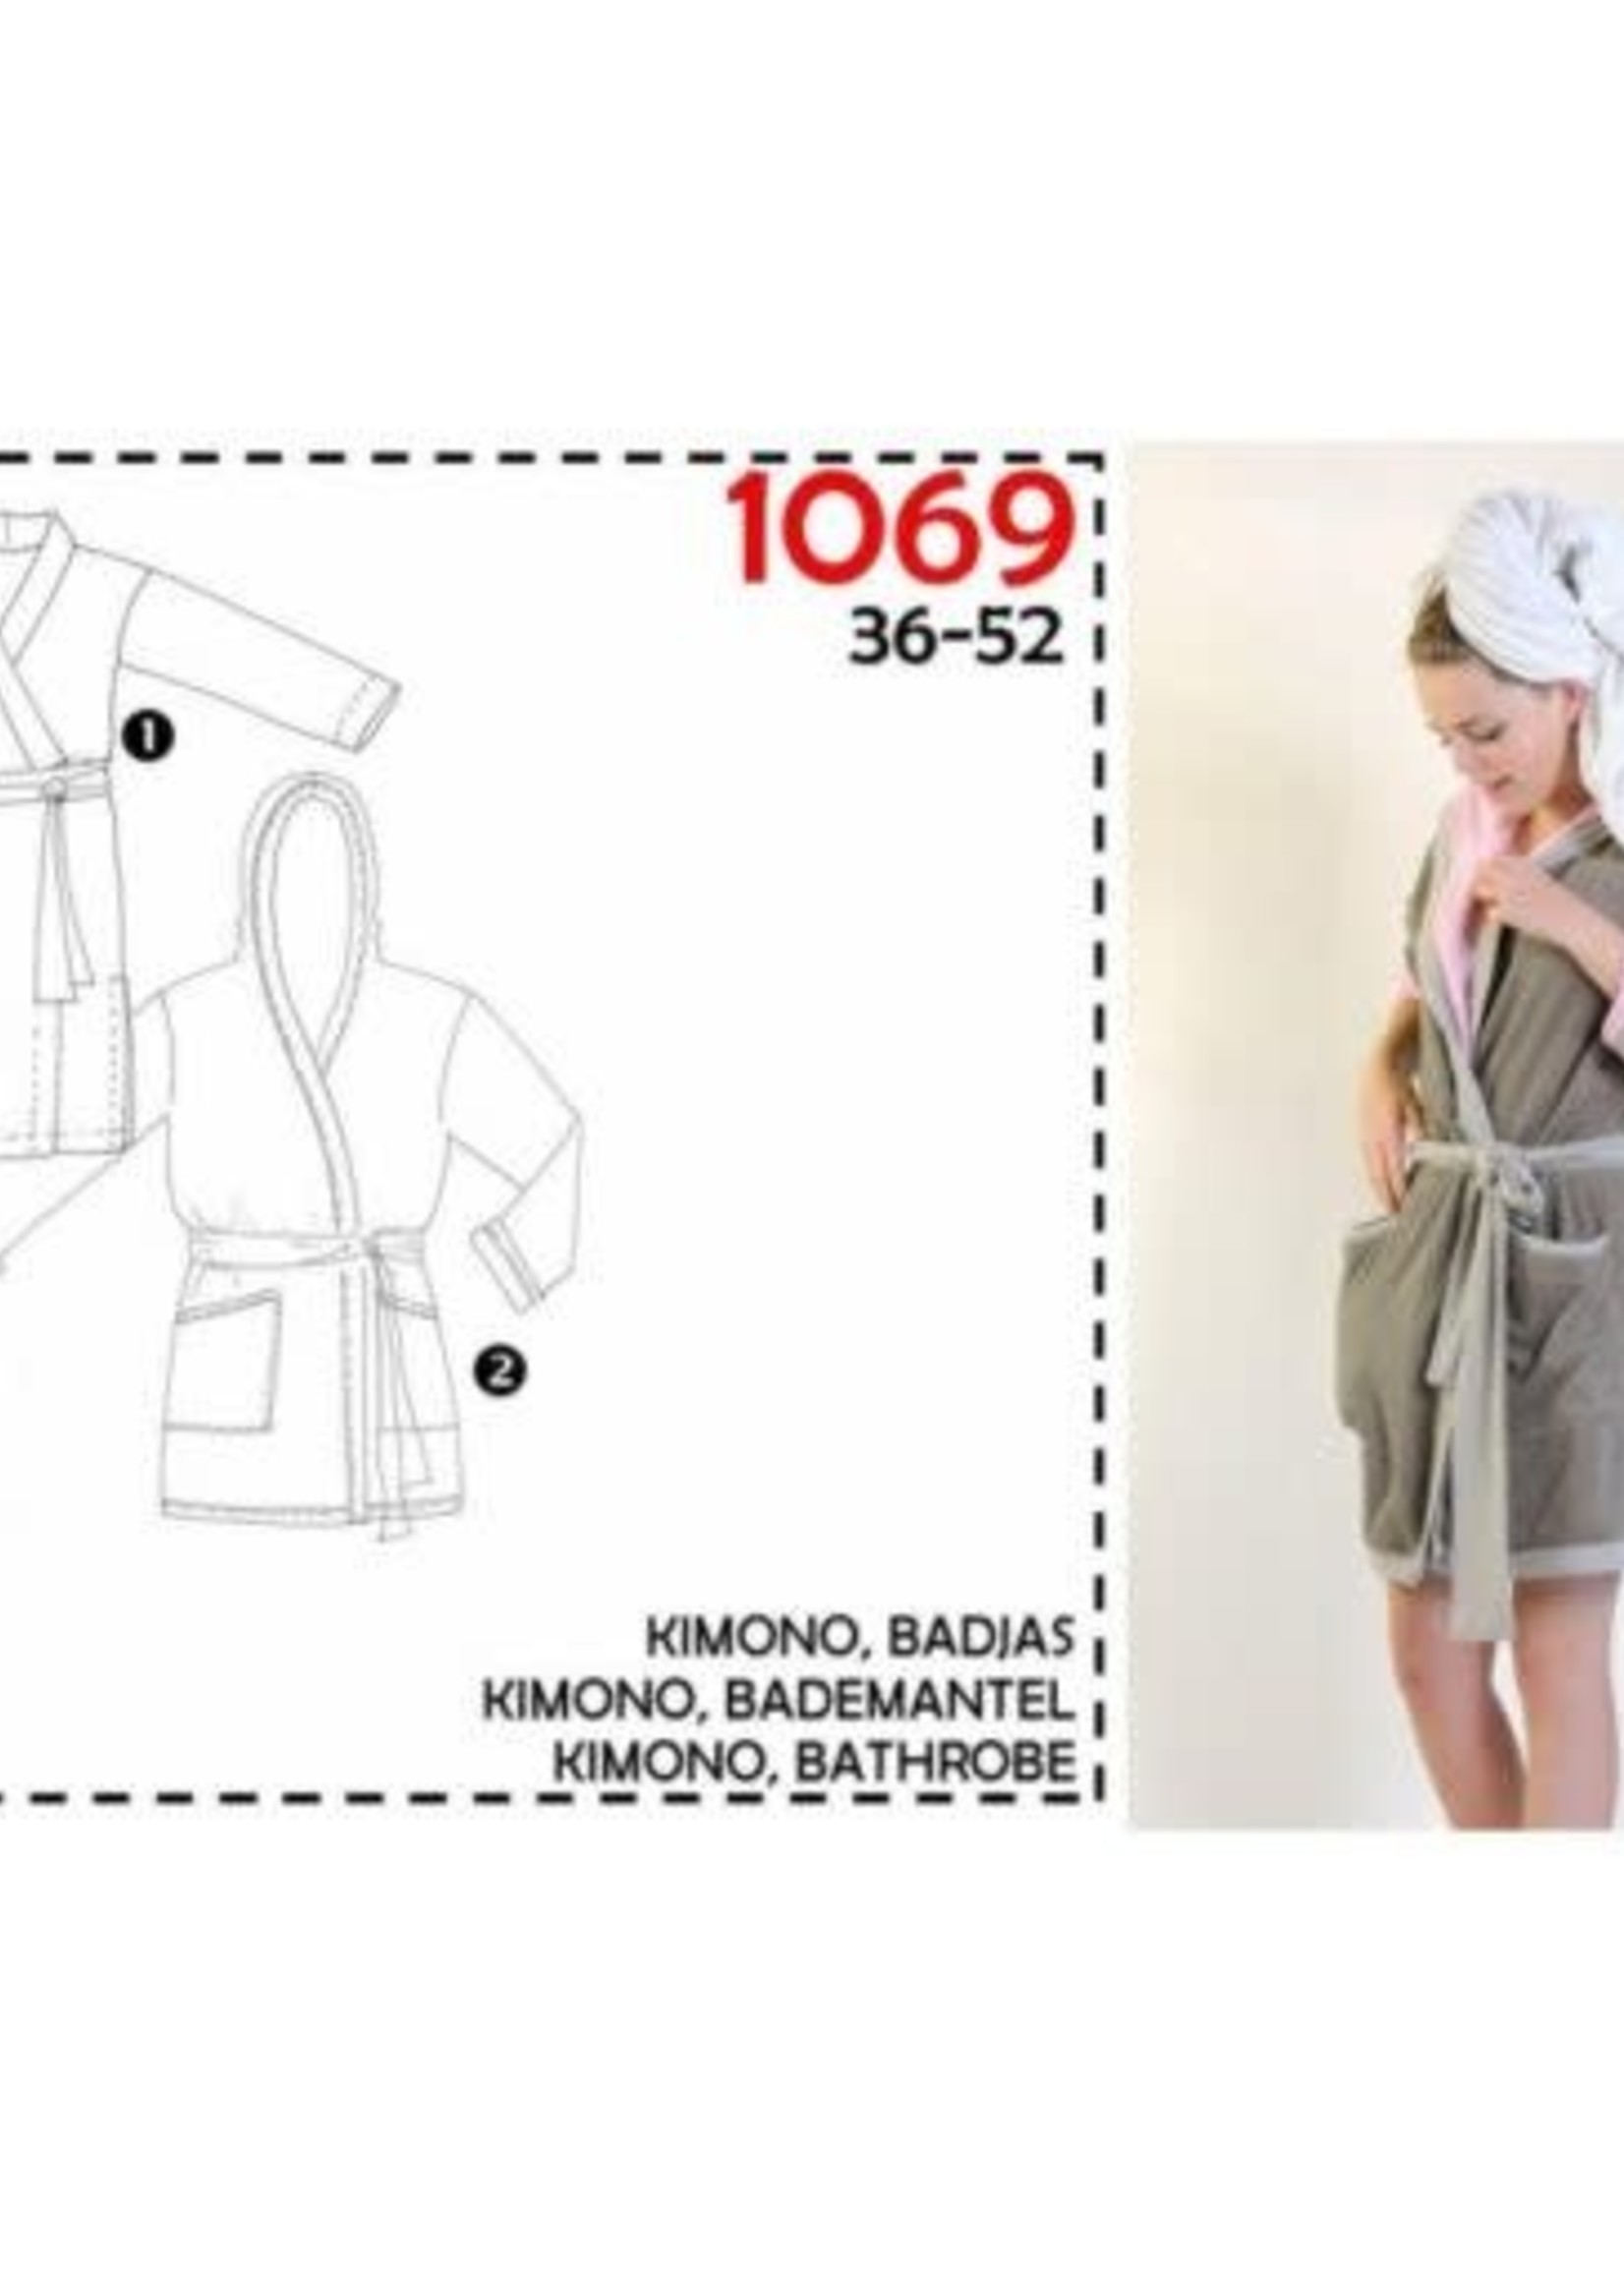 It's a fits Naaipatroon - It's a fits - Kimono/Badjas - 1069